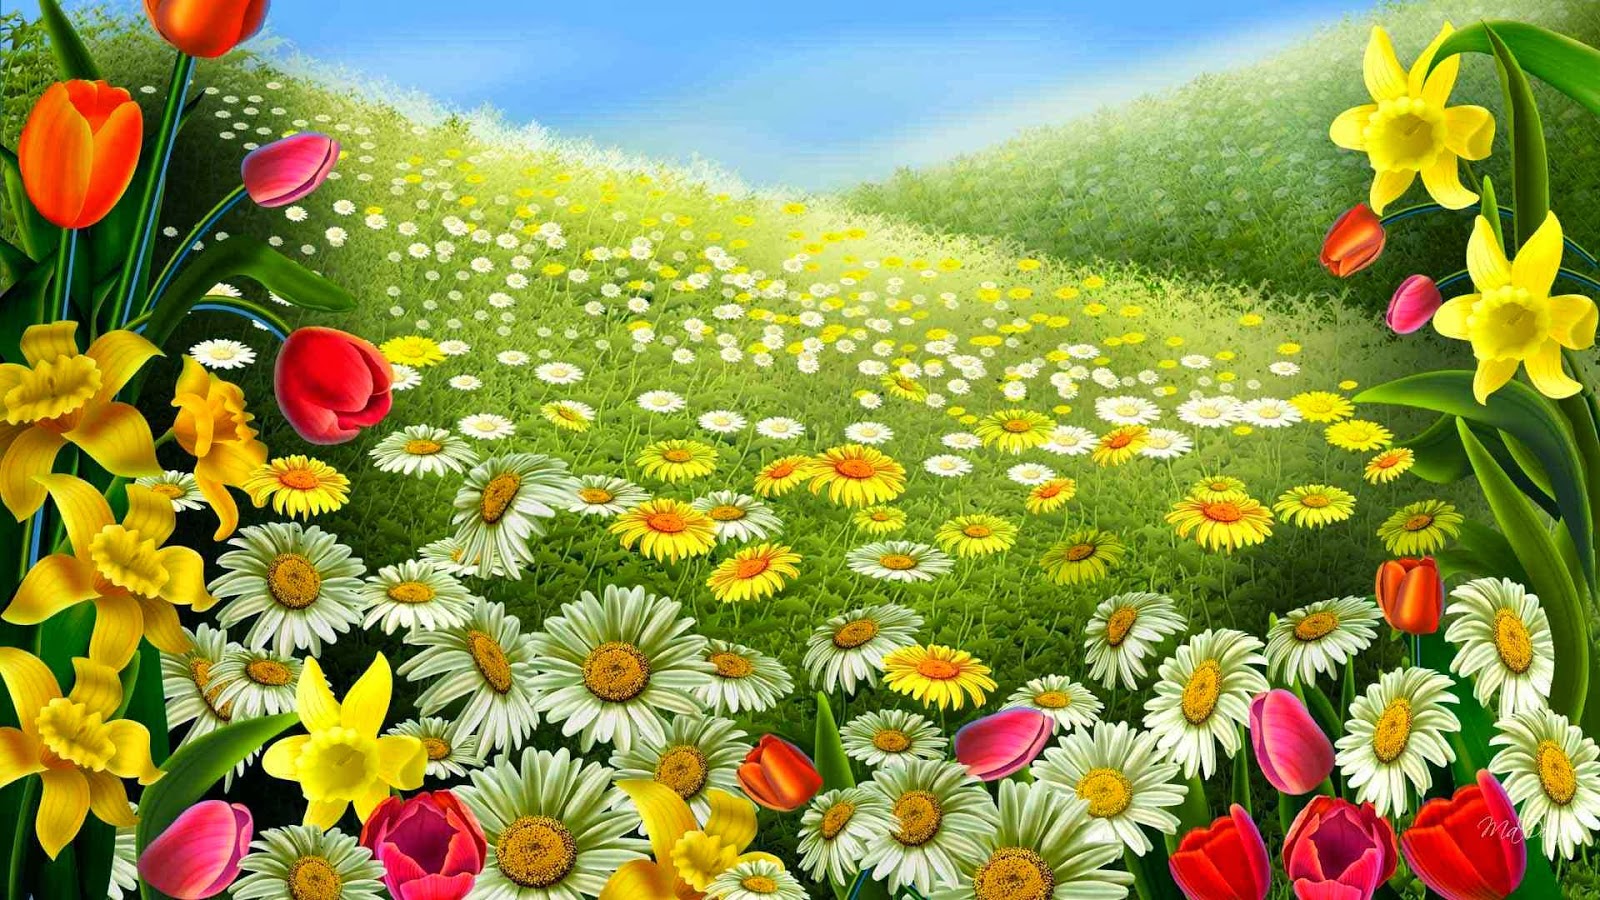 4787_Art-design-field-full-of-flowers.jpg